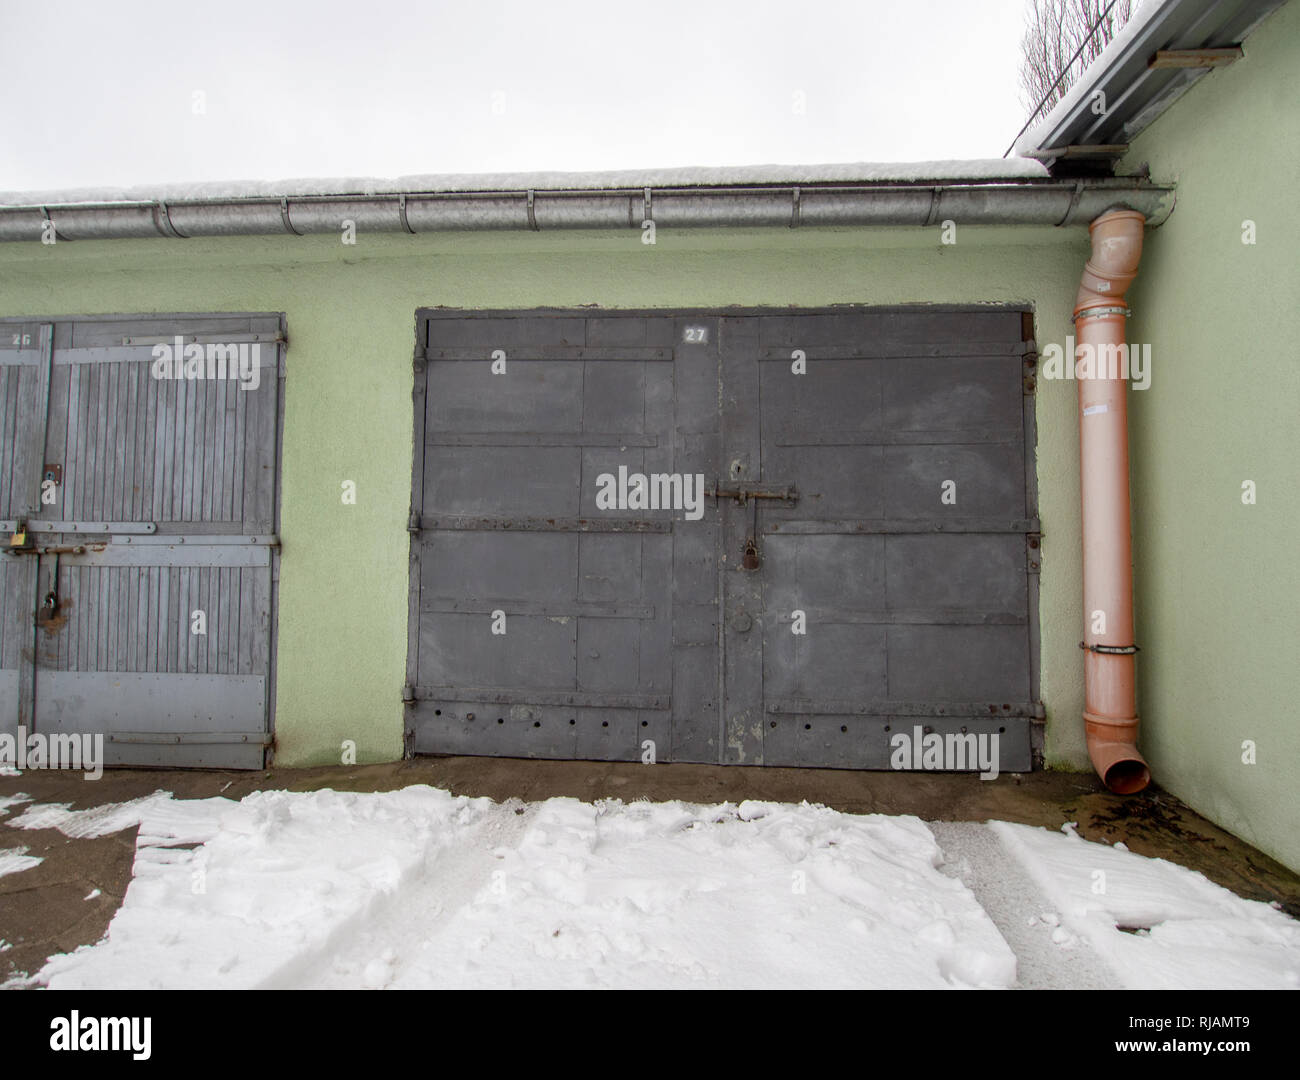 LODZ, Polonia- 4 de febrero de 2019: garaje verde en la zona de Lodz. Foto de stock